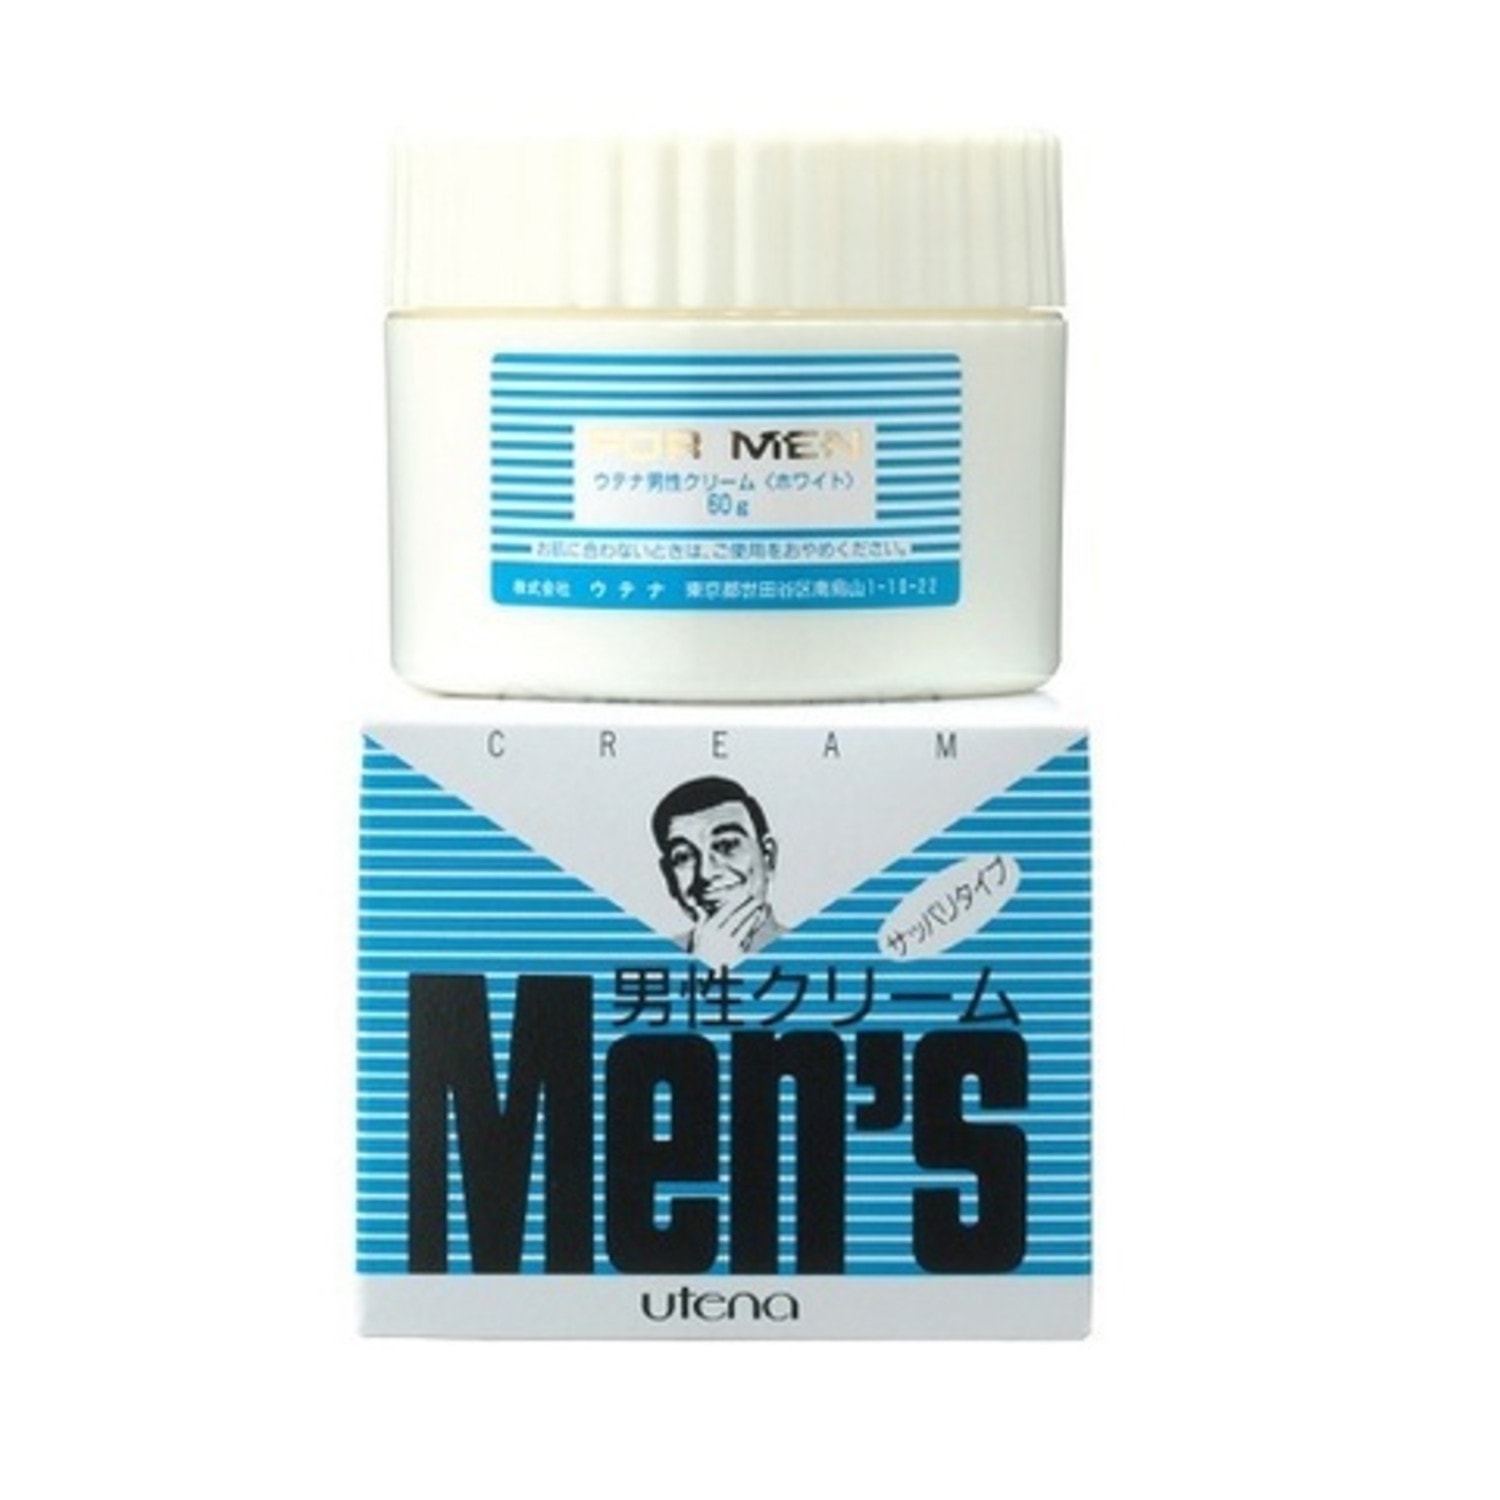  UTENA Men's Тонизирующий защитный крем после бритья с витамином В6, 60г. / 121133